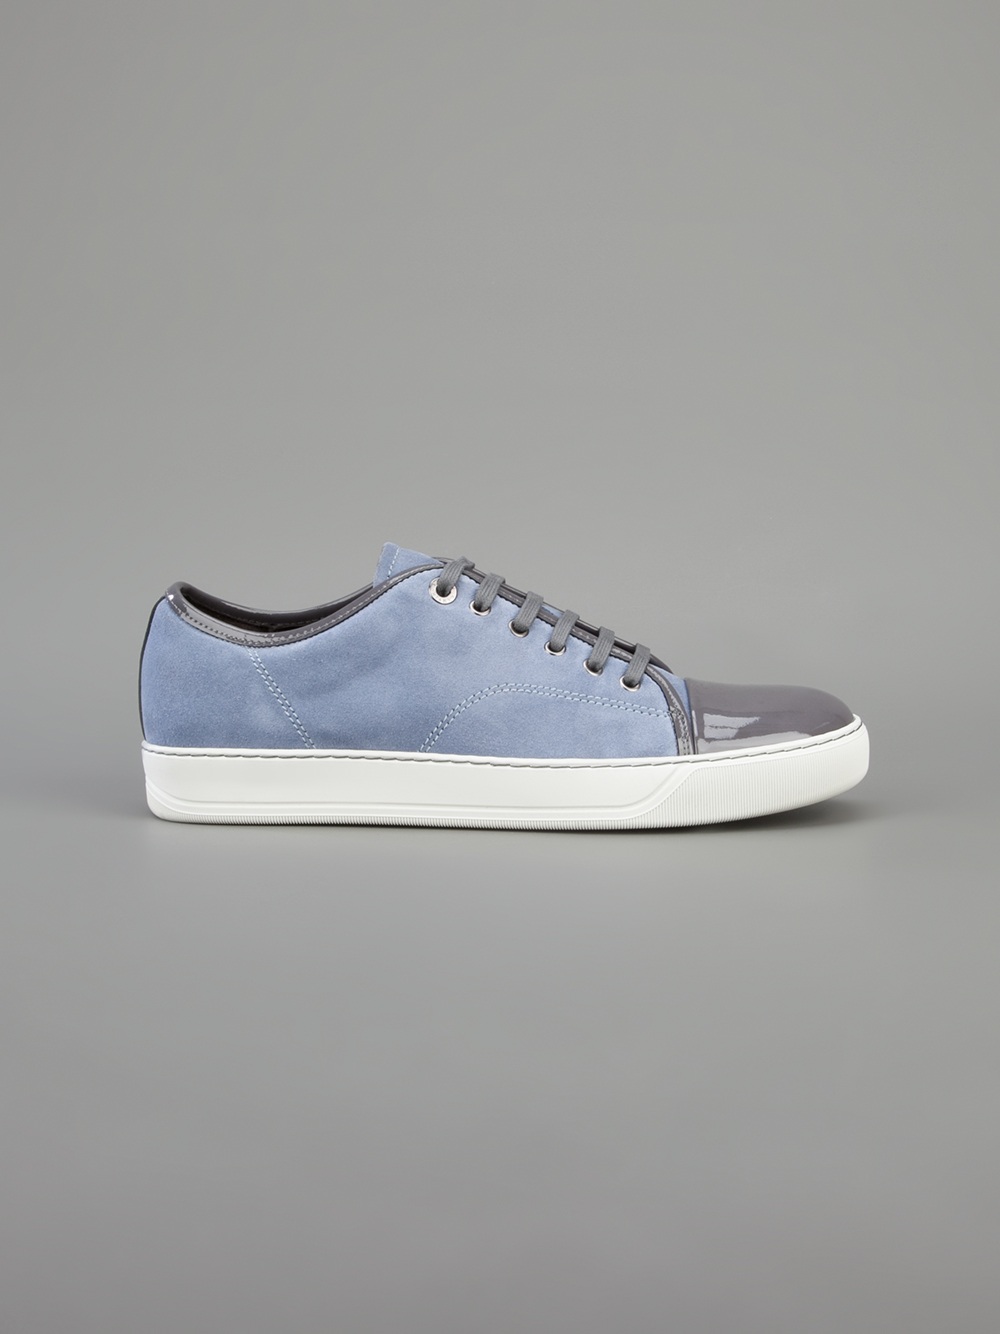 Lanvin Patent Toe Cap Sneaker in Blue for Men - Lyst